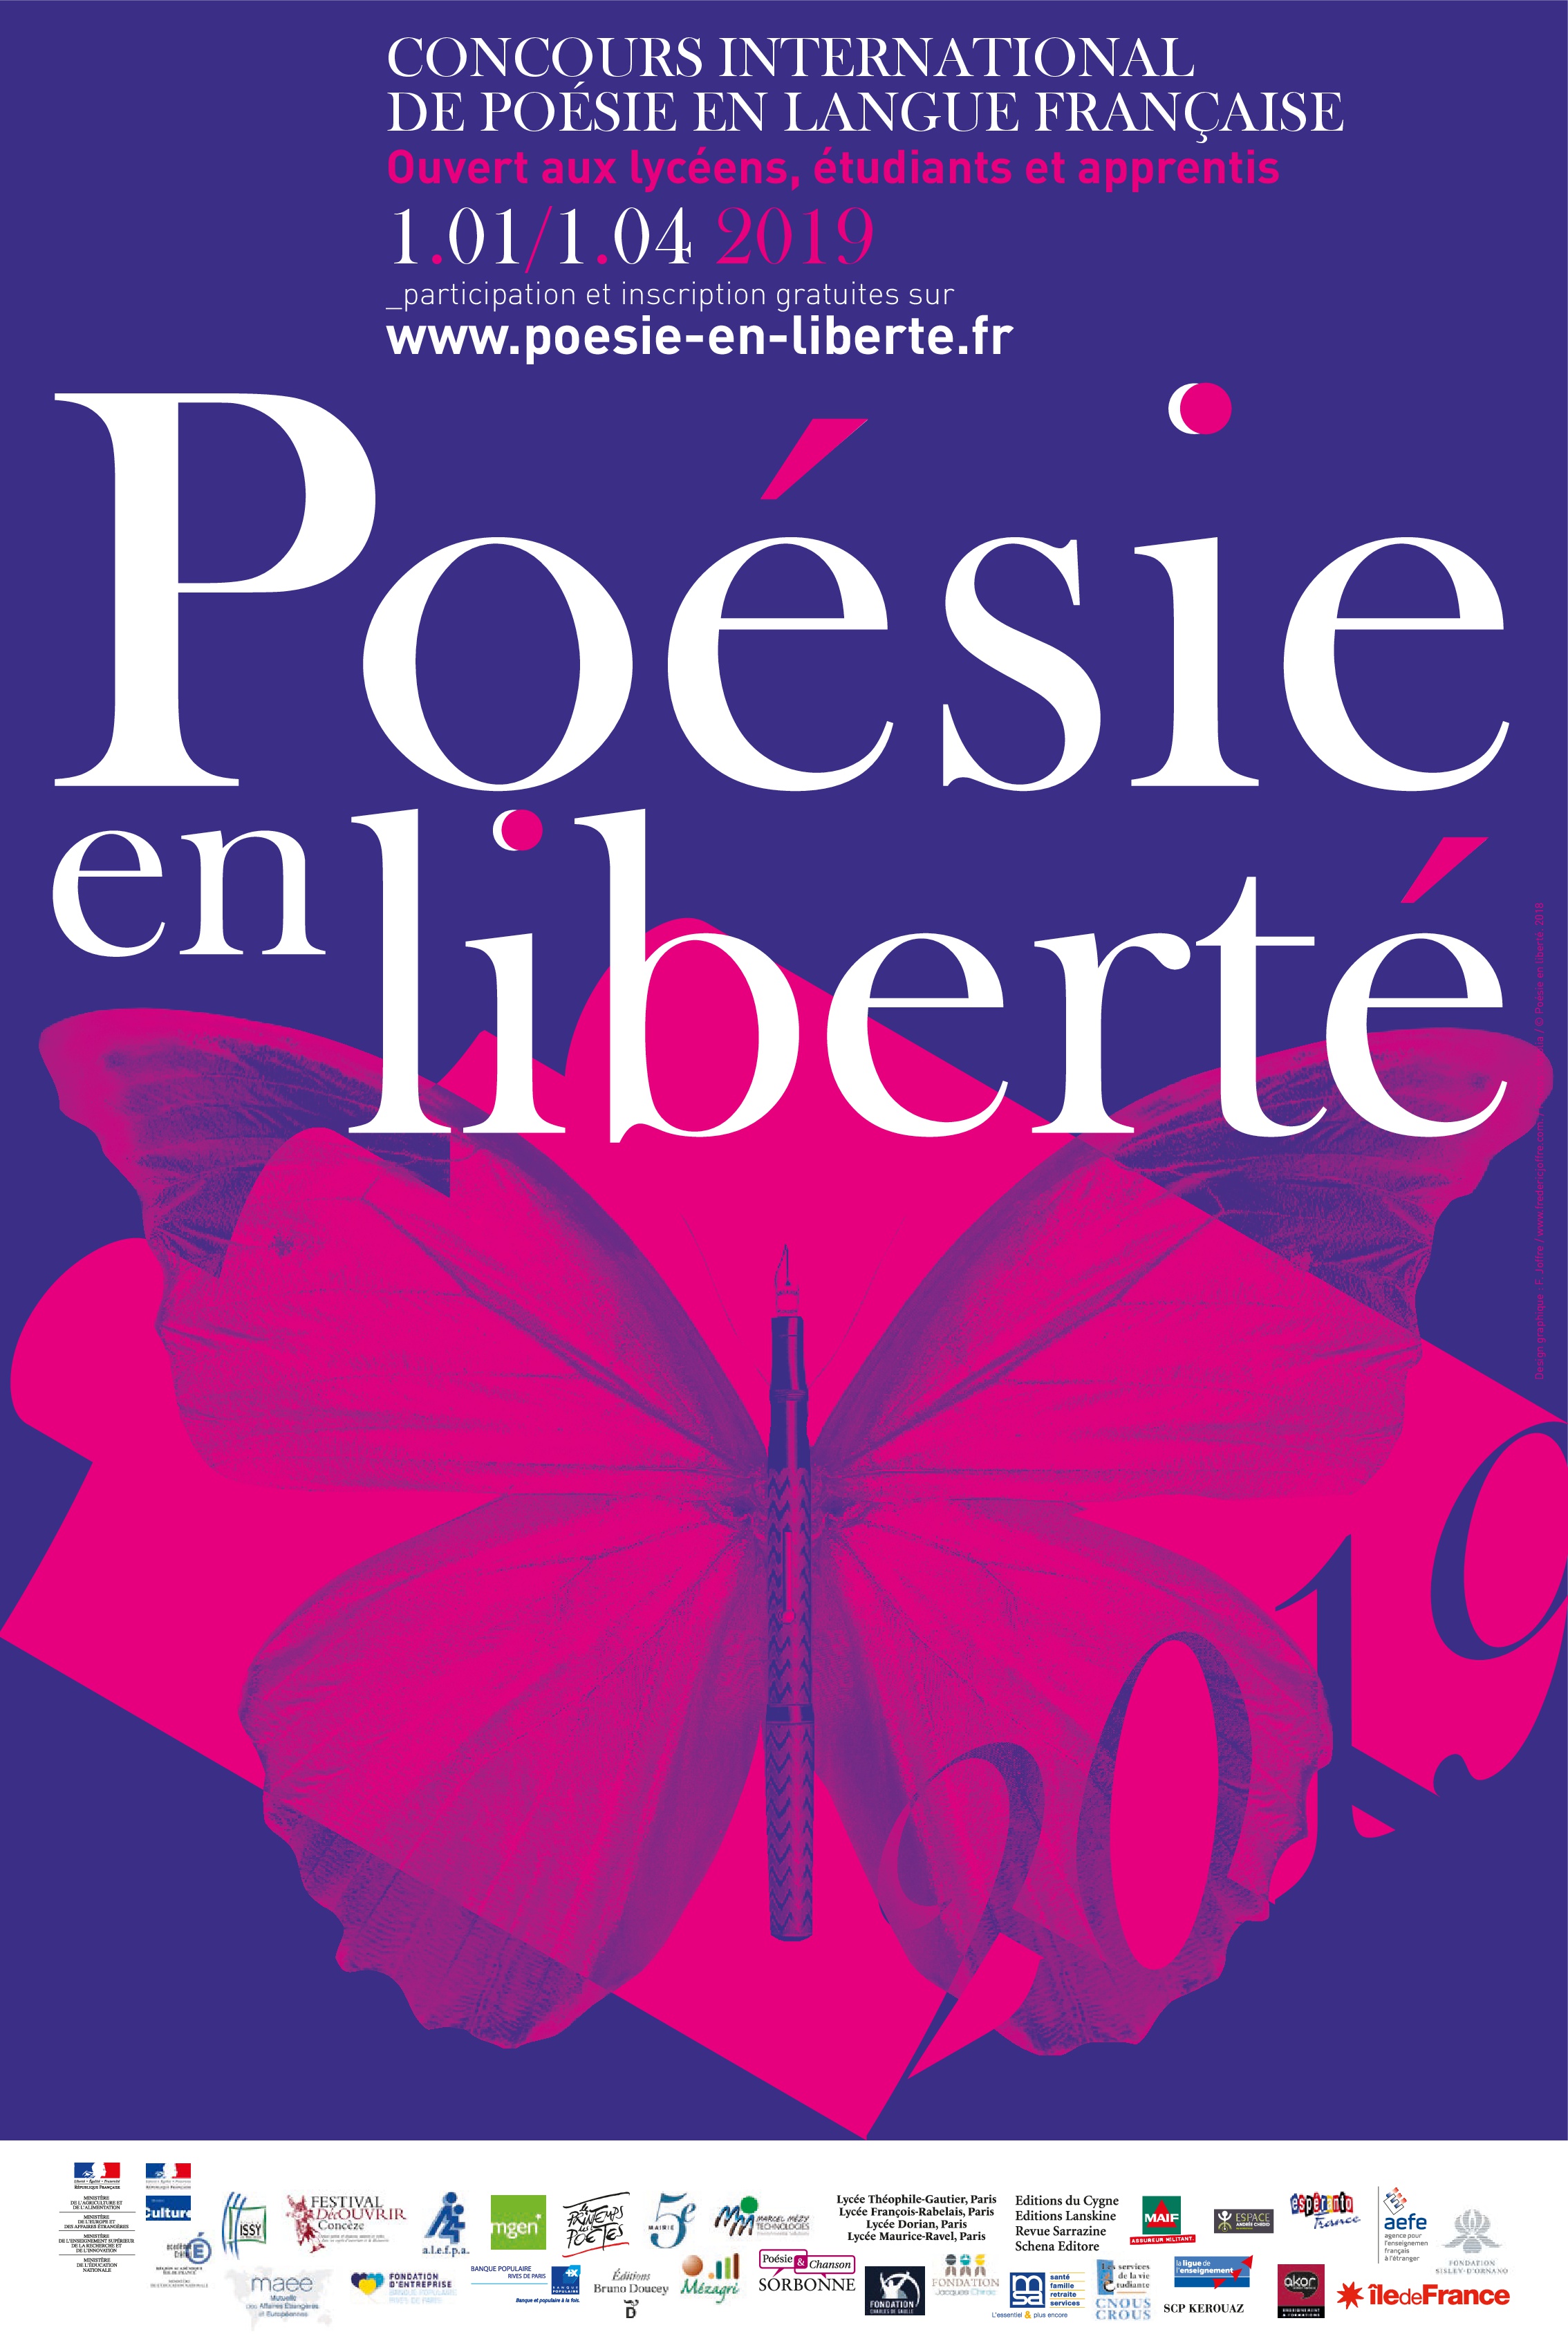 Poesie en liberte 2002. Concours de poesie des lyceens, via internet Réf  POE189